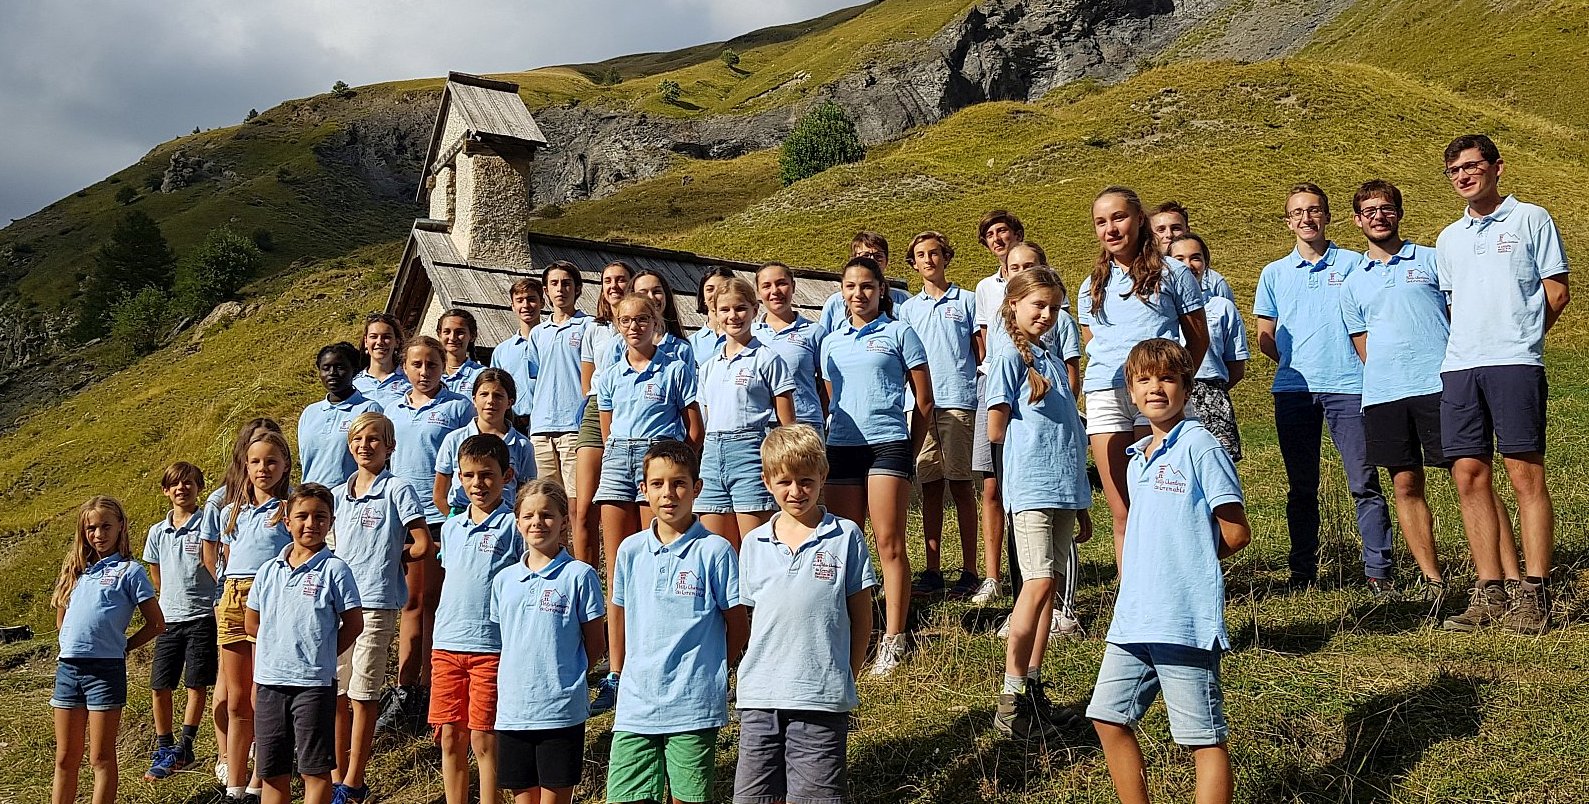 Le 12 Décembre: Les Petits Chanteurs du Faucigny à Grenoble